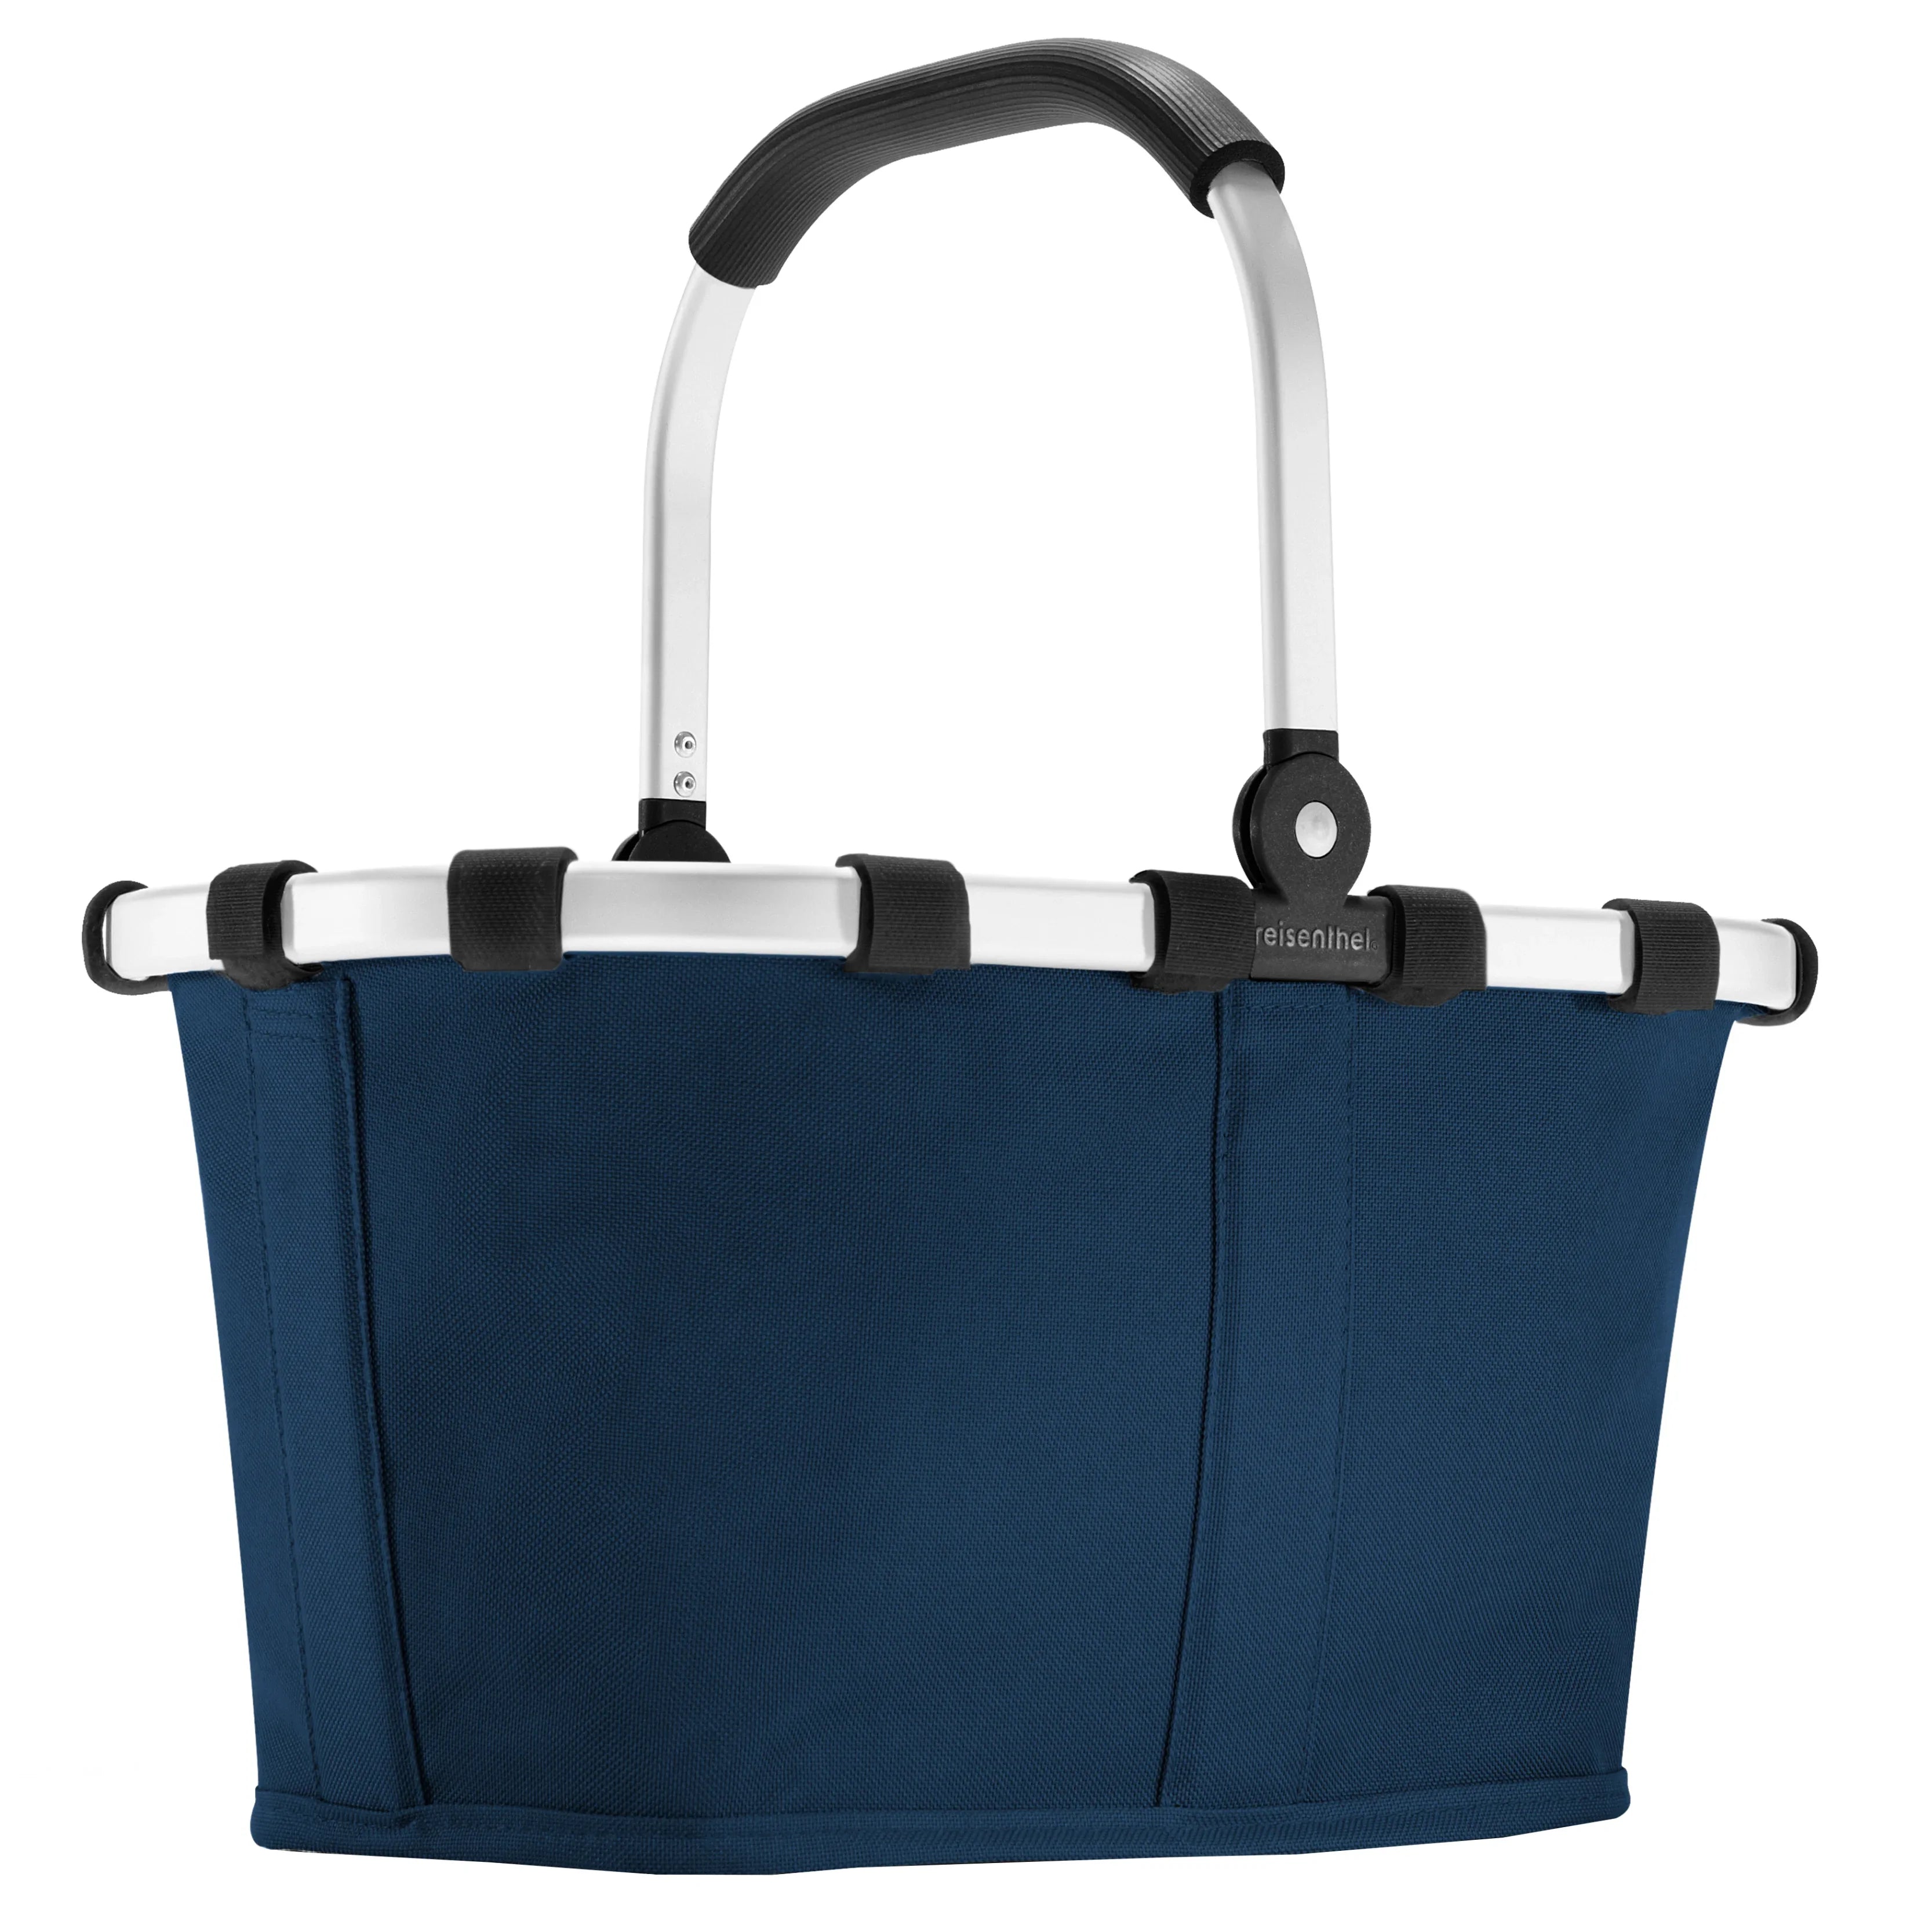 Reisenthel Shopping Carrybag XS Kinder-Einkaufskorb 33 cm - dark blue